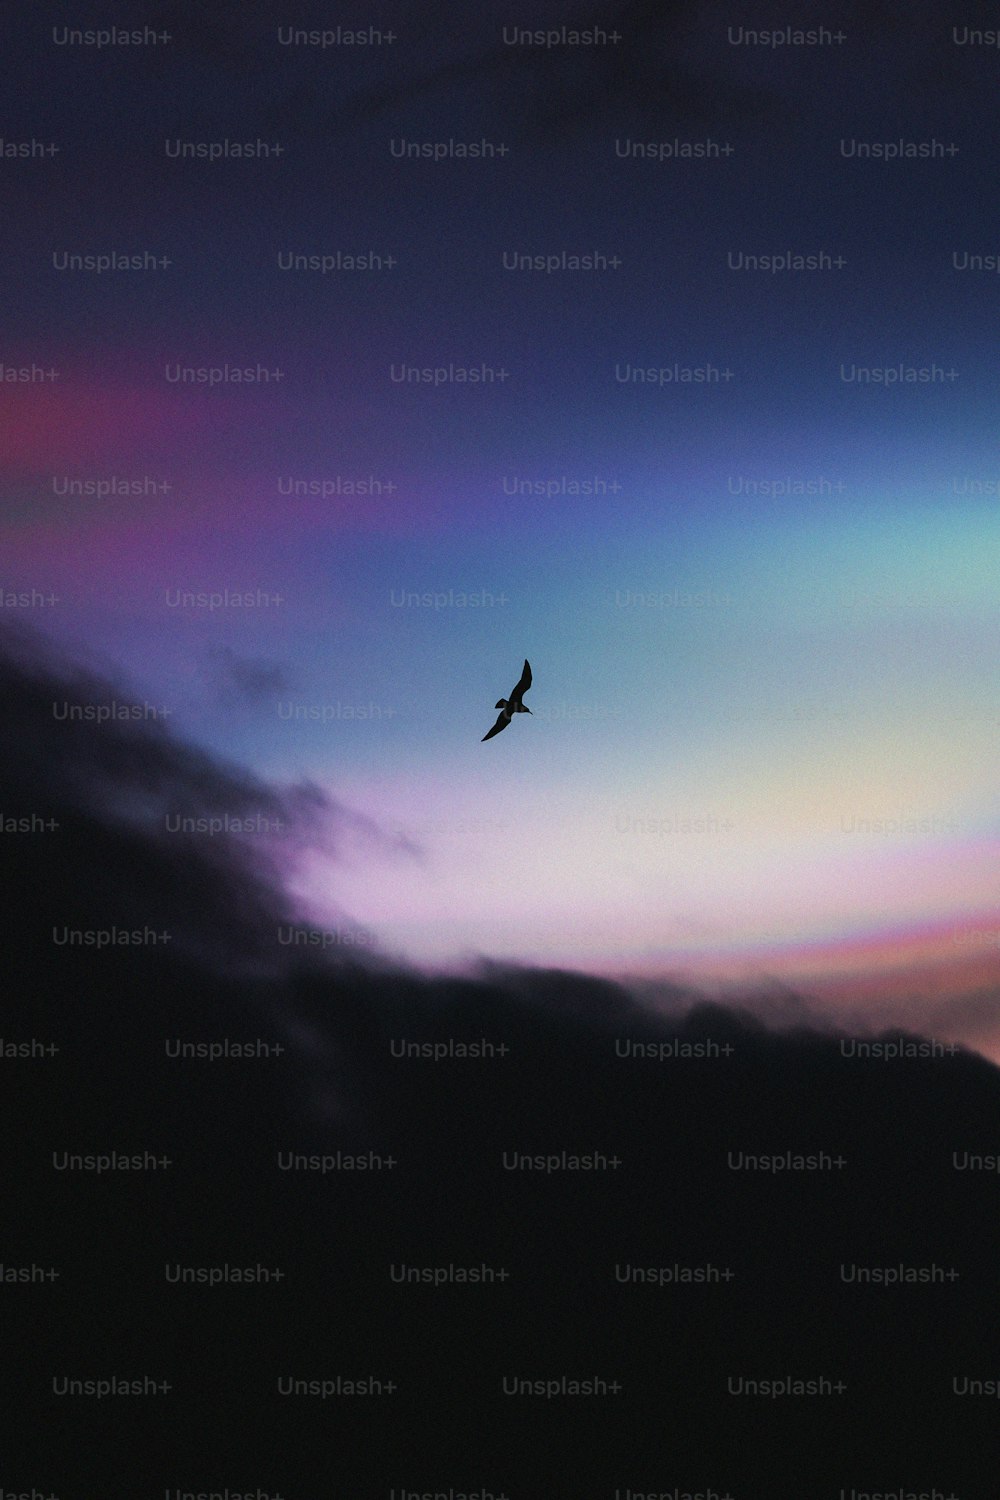 ein Vogel, der am Himmel mit einem Regenbogen im Hintergrund fliegt